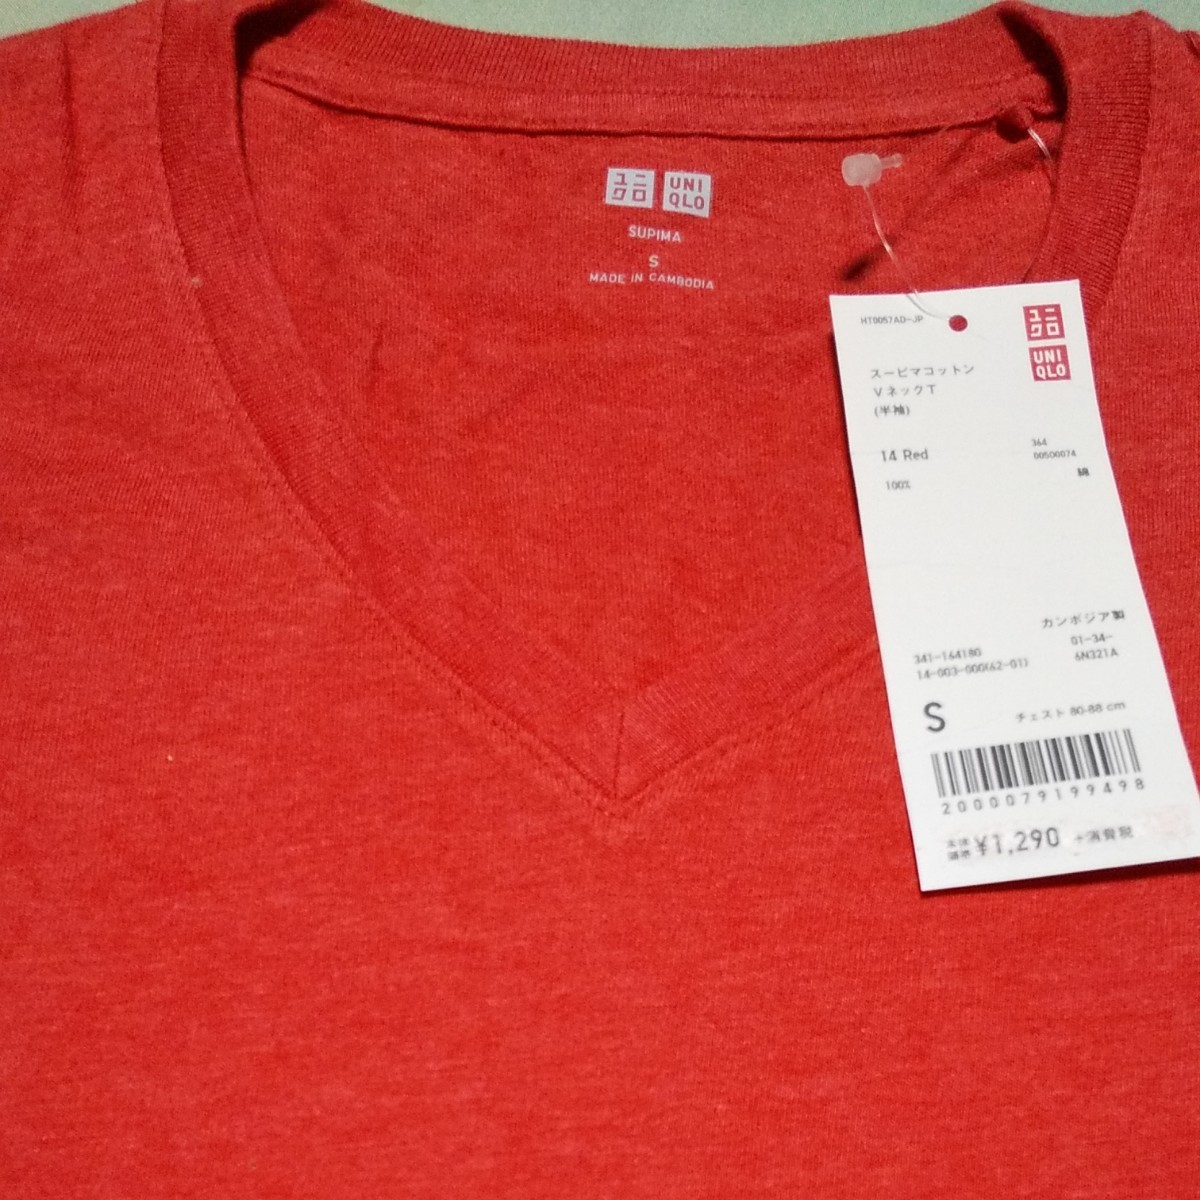 新品 ユニクロ スーピマコットン Vネック T 半袖 赤綿 S  メンズ Tシャツ 半袖 無地 涼しい 夏服トップス 部屋着